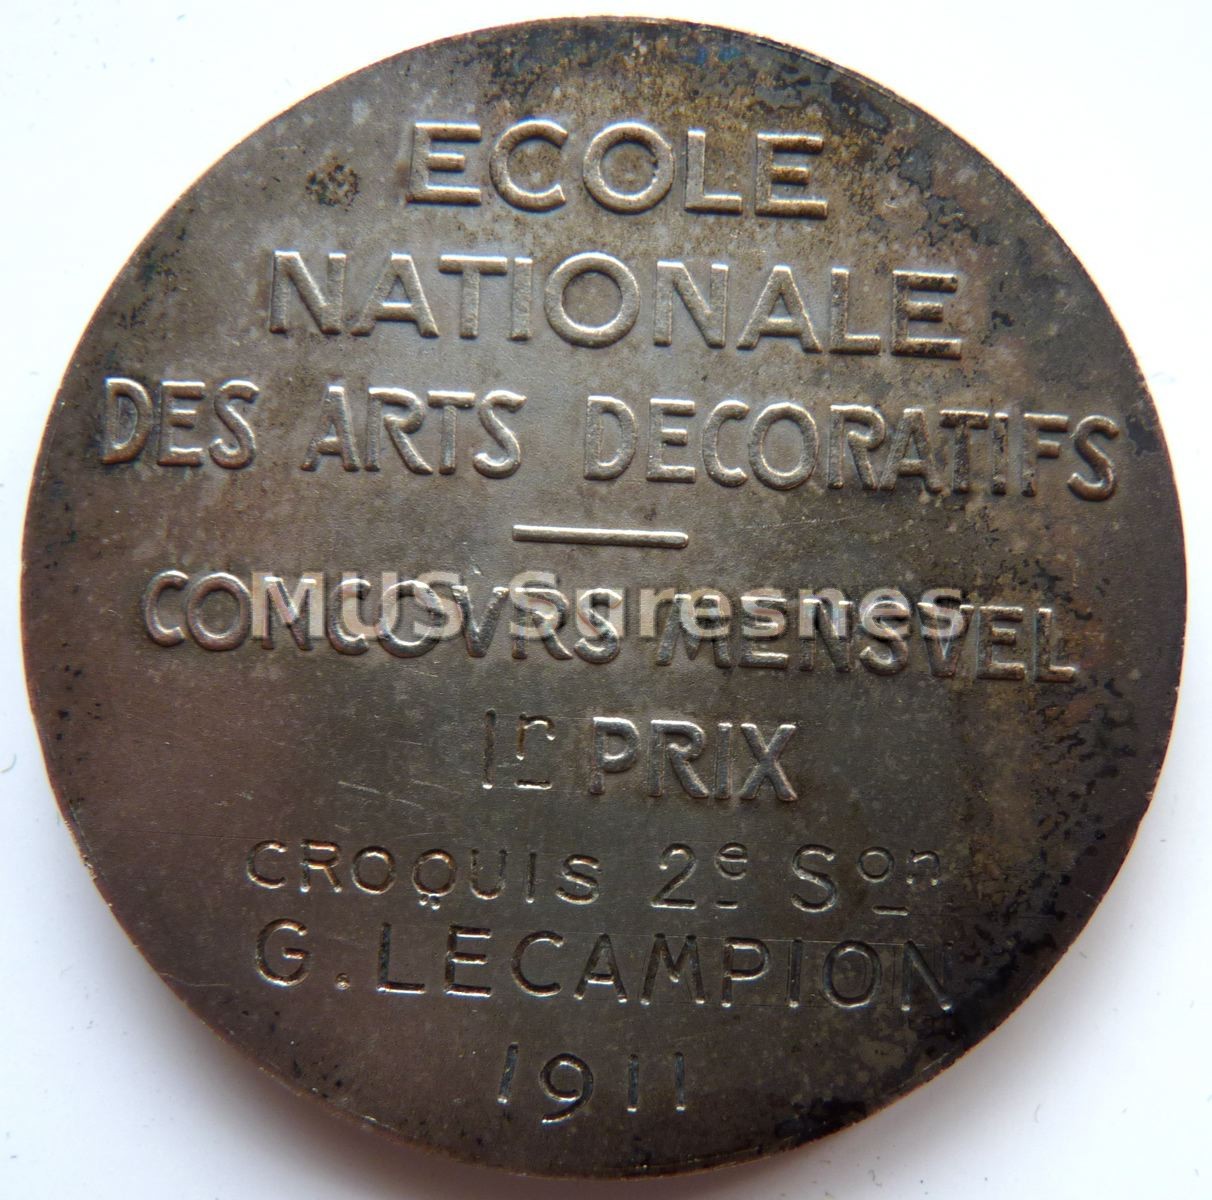 Ecole Nationale des Arts décoratifs - Concours Mensuel 1er prix - Croquis - G. Lecampion 1911